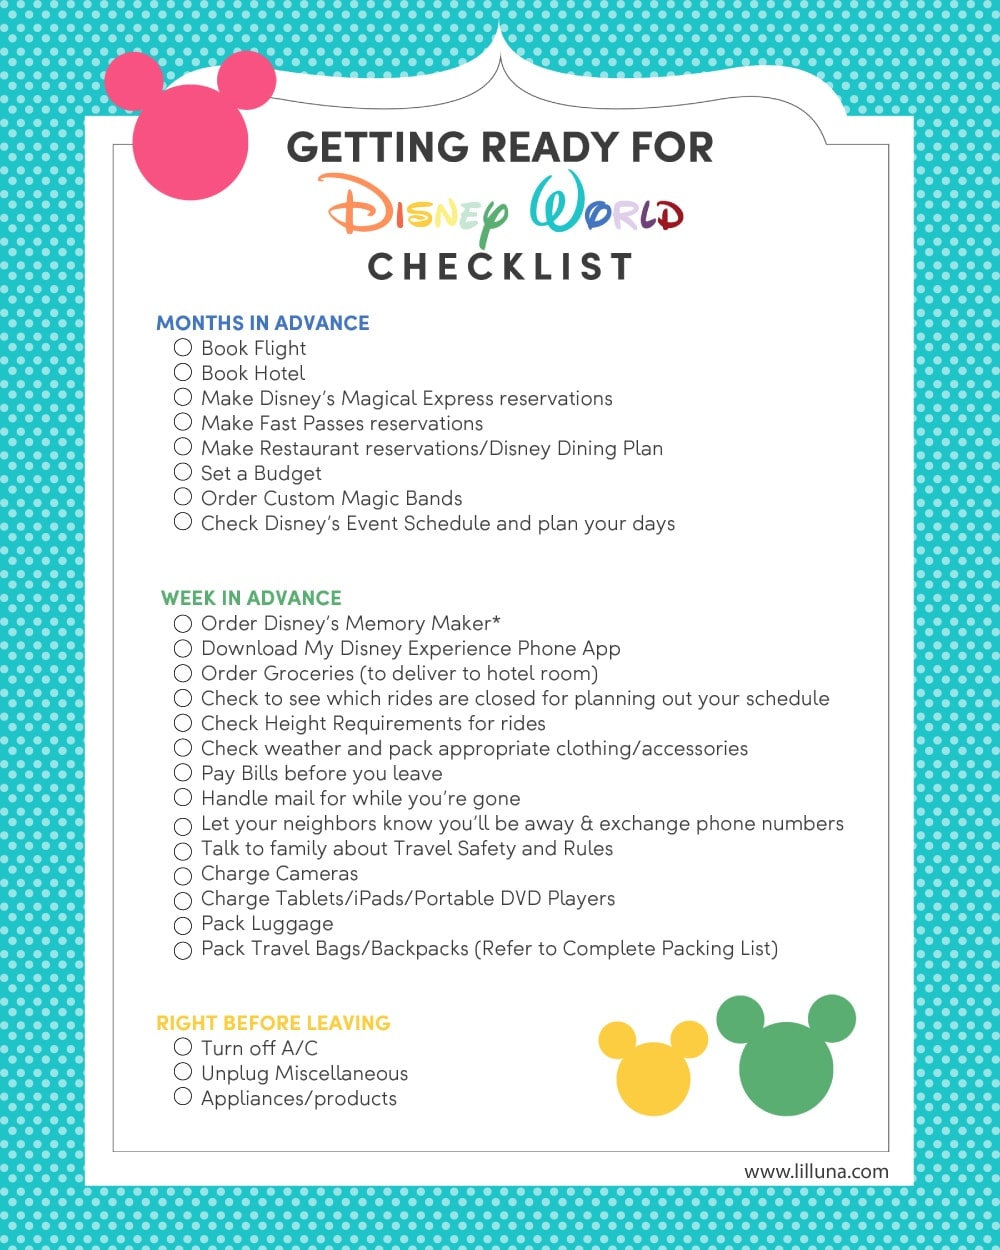 Getting ready for Disney World Checklist